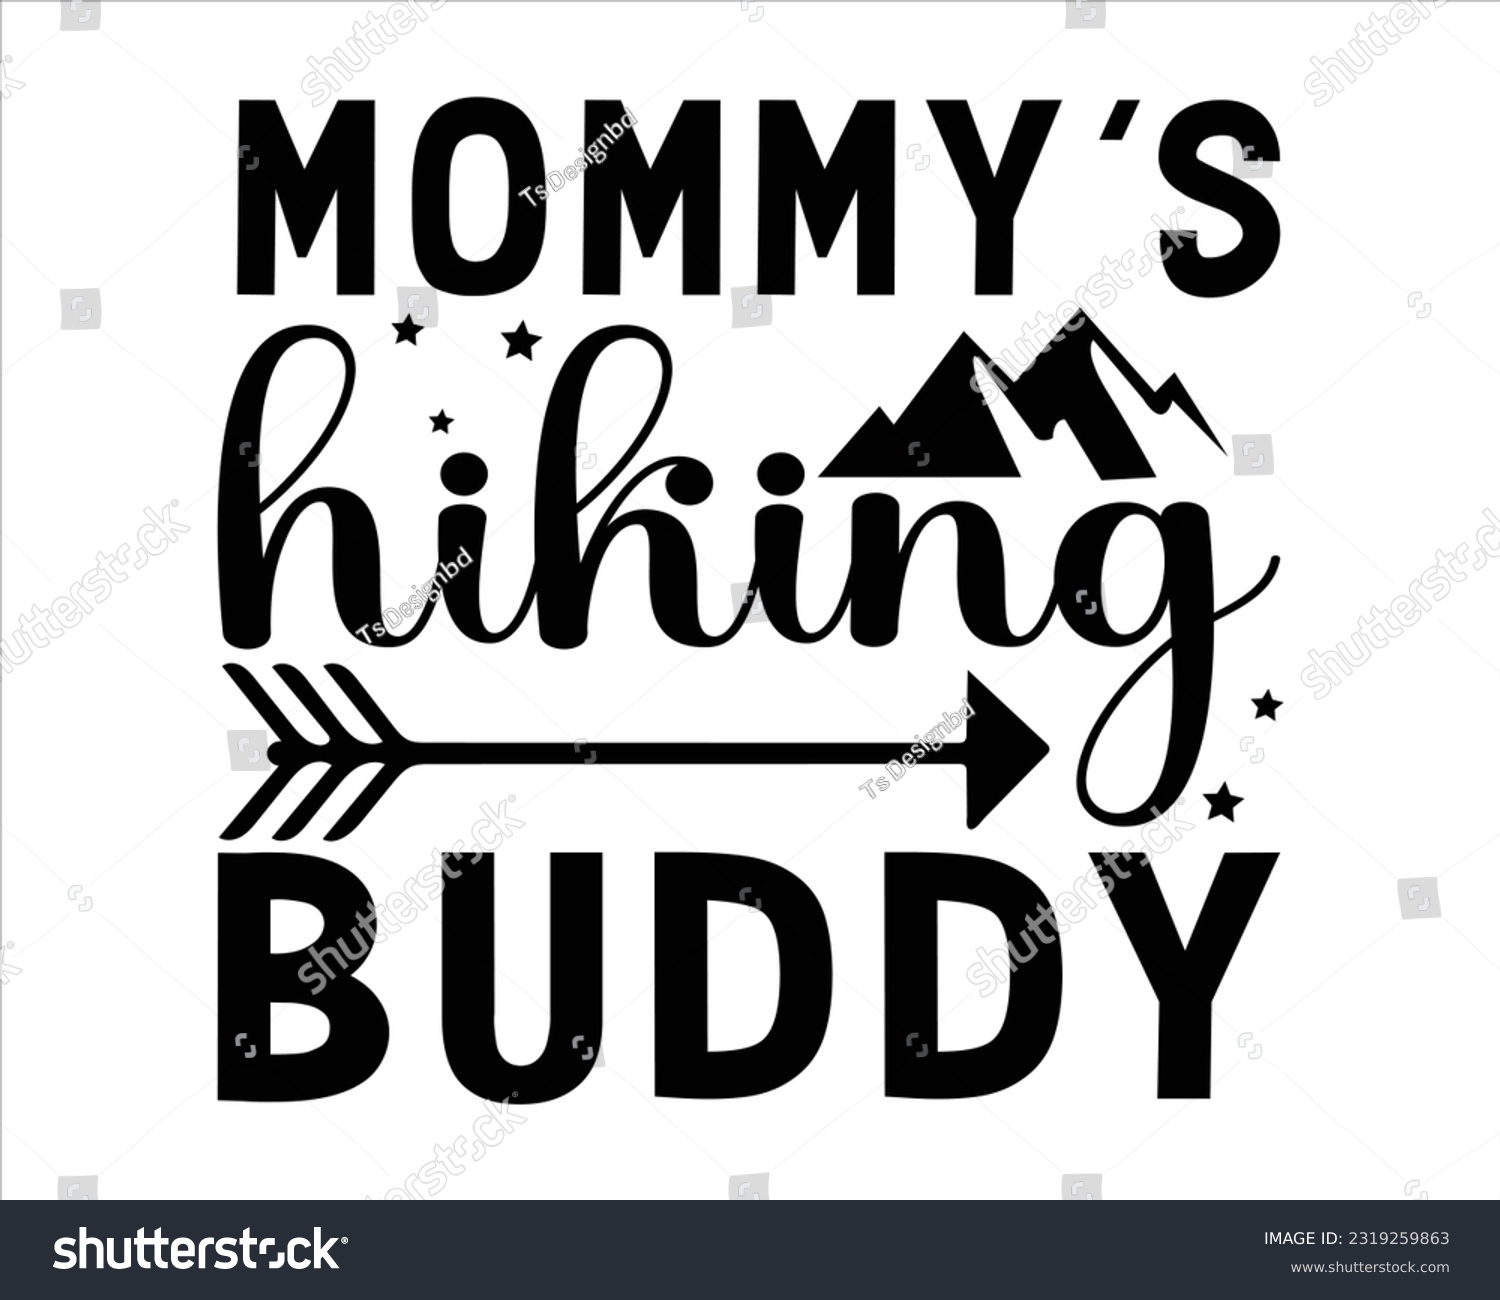 SVG of Mommy's Hiking Buddy Svg Design,Hiking Svg Design, Mountain illustration, outdoor adventure ,Outdoor Adventure Inspiring Motivation Quote, camping, hiking svg